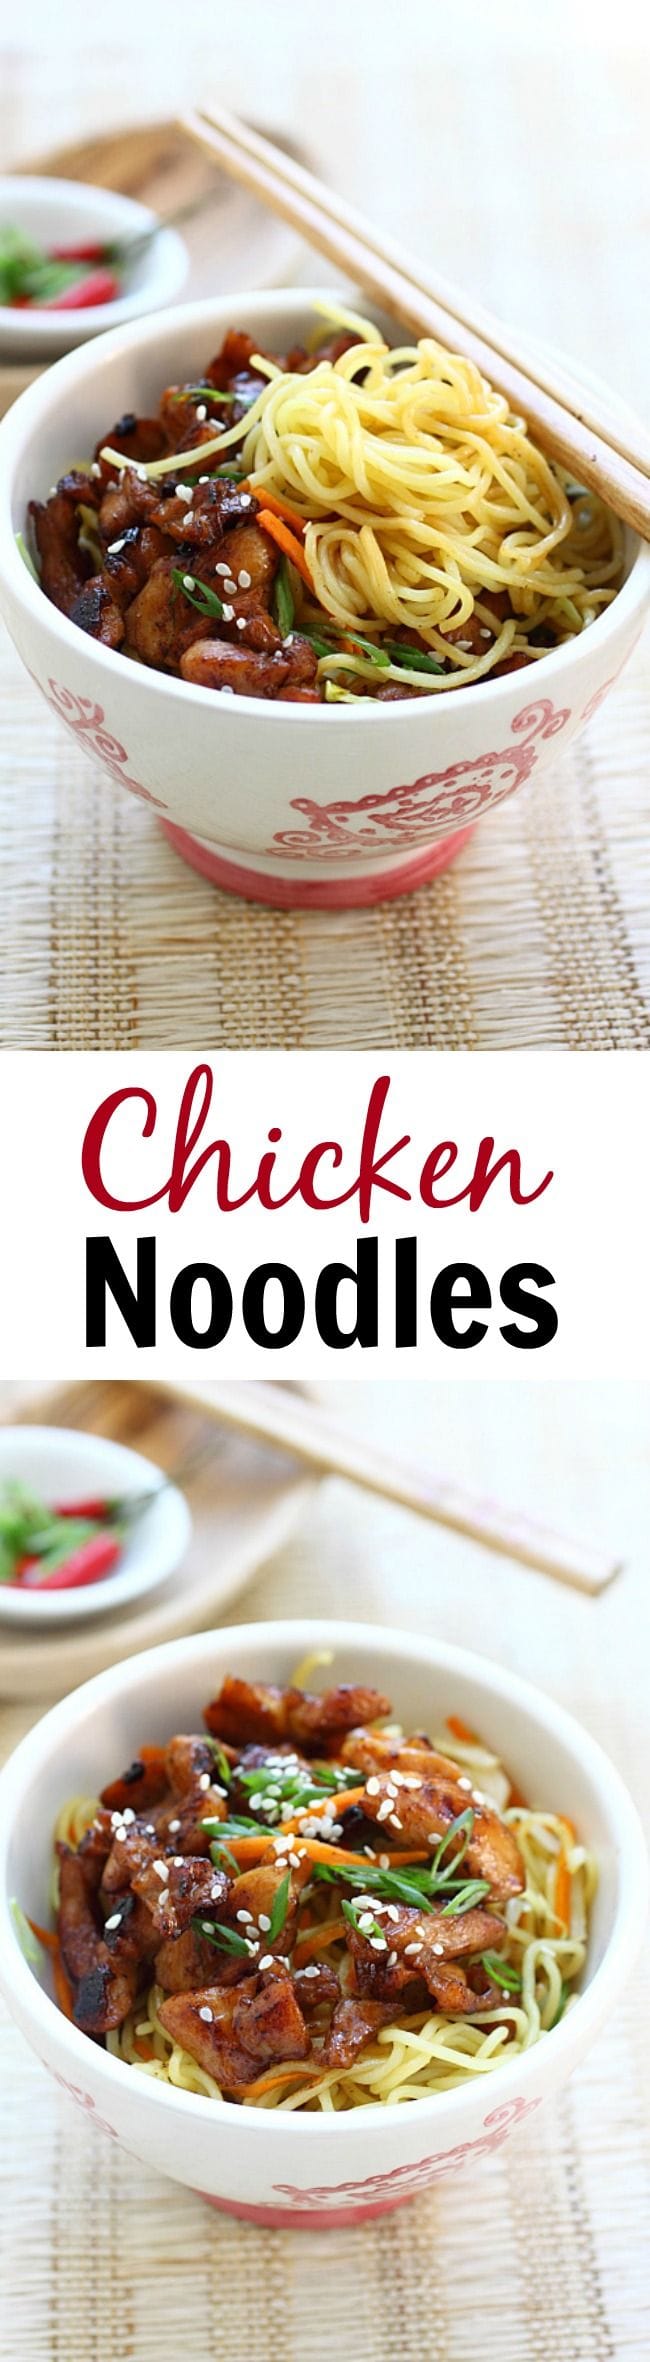 Chicken Stir-fry Noodles